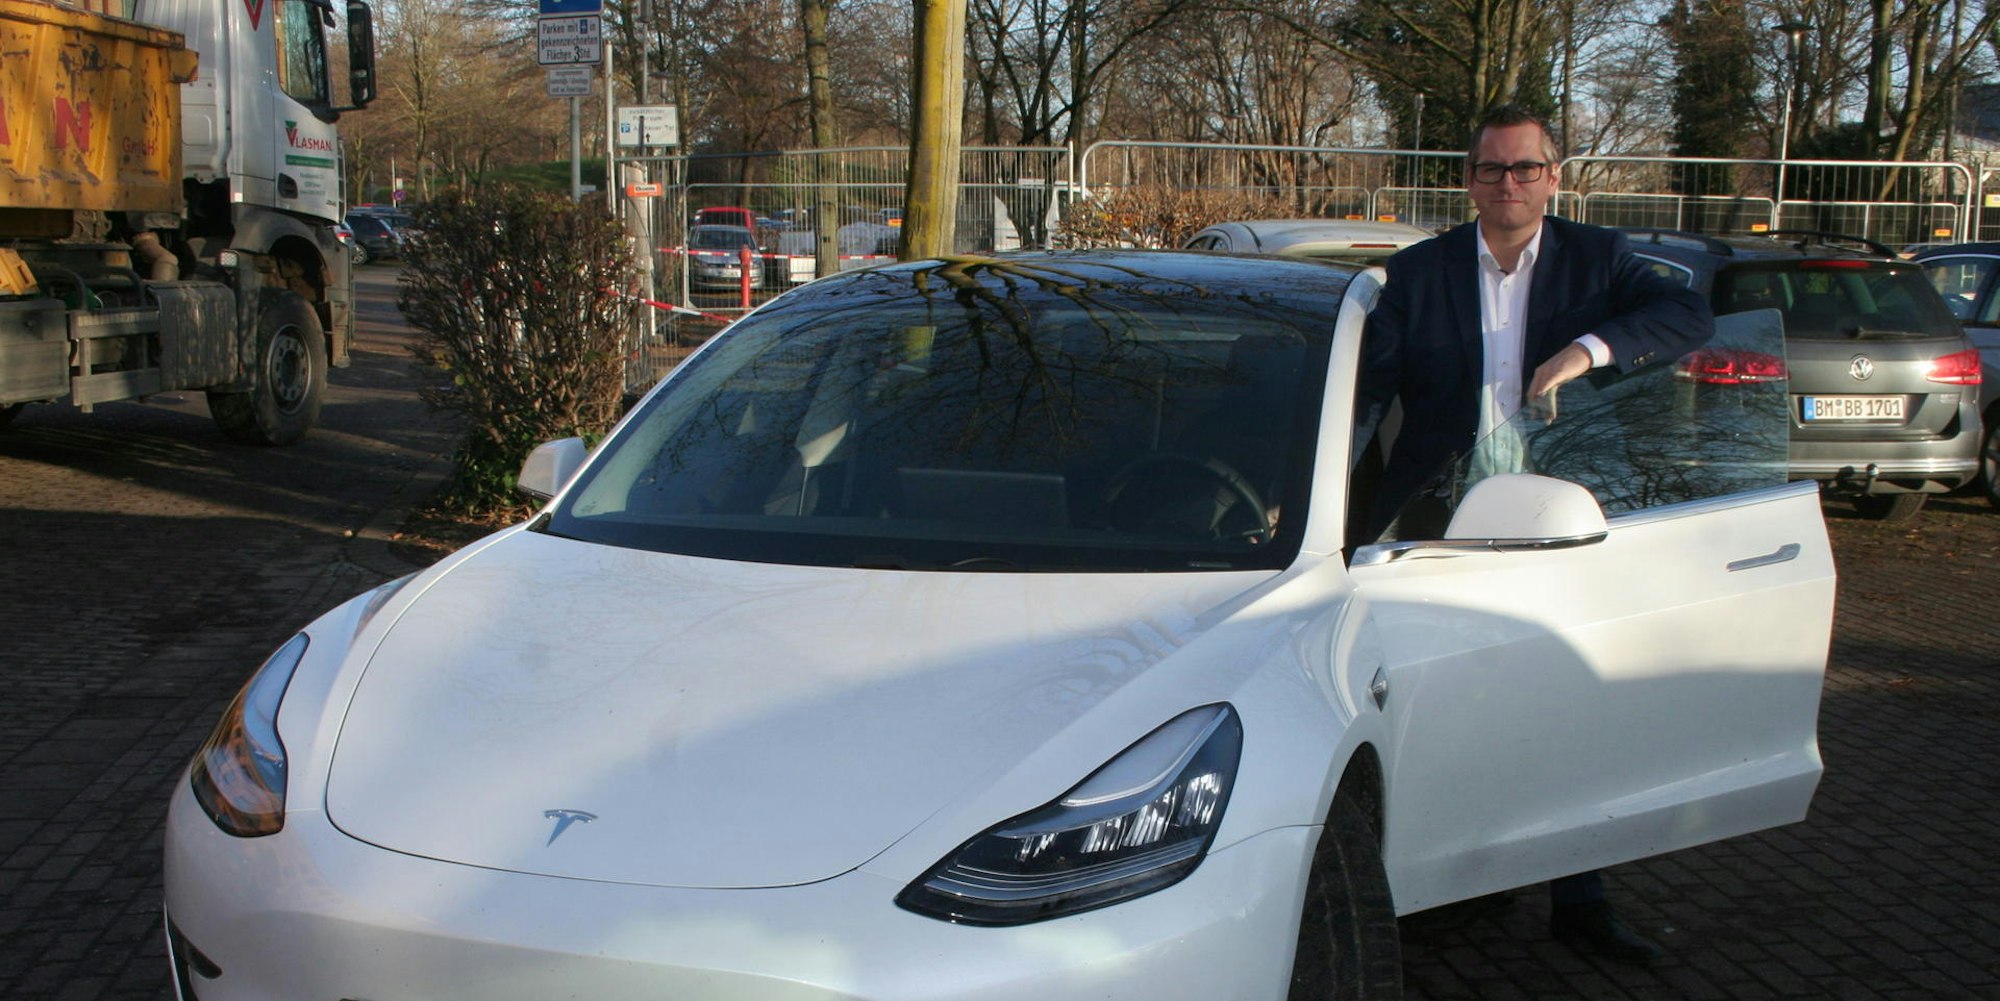 Der Bedburger Sascha Solbach ist der einzige Bürgermeister im Kreis, der einen Tesla fährt.